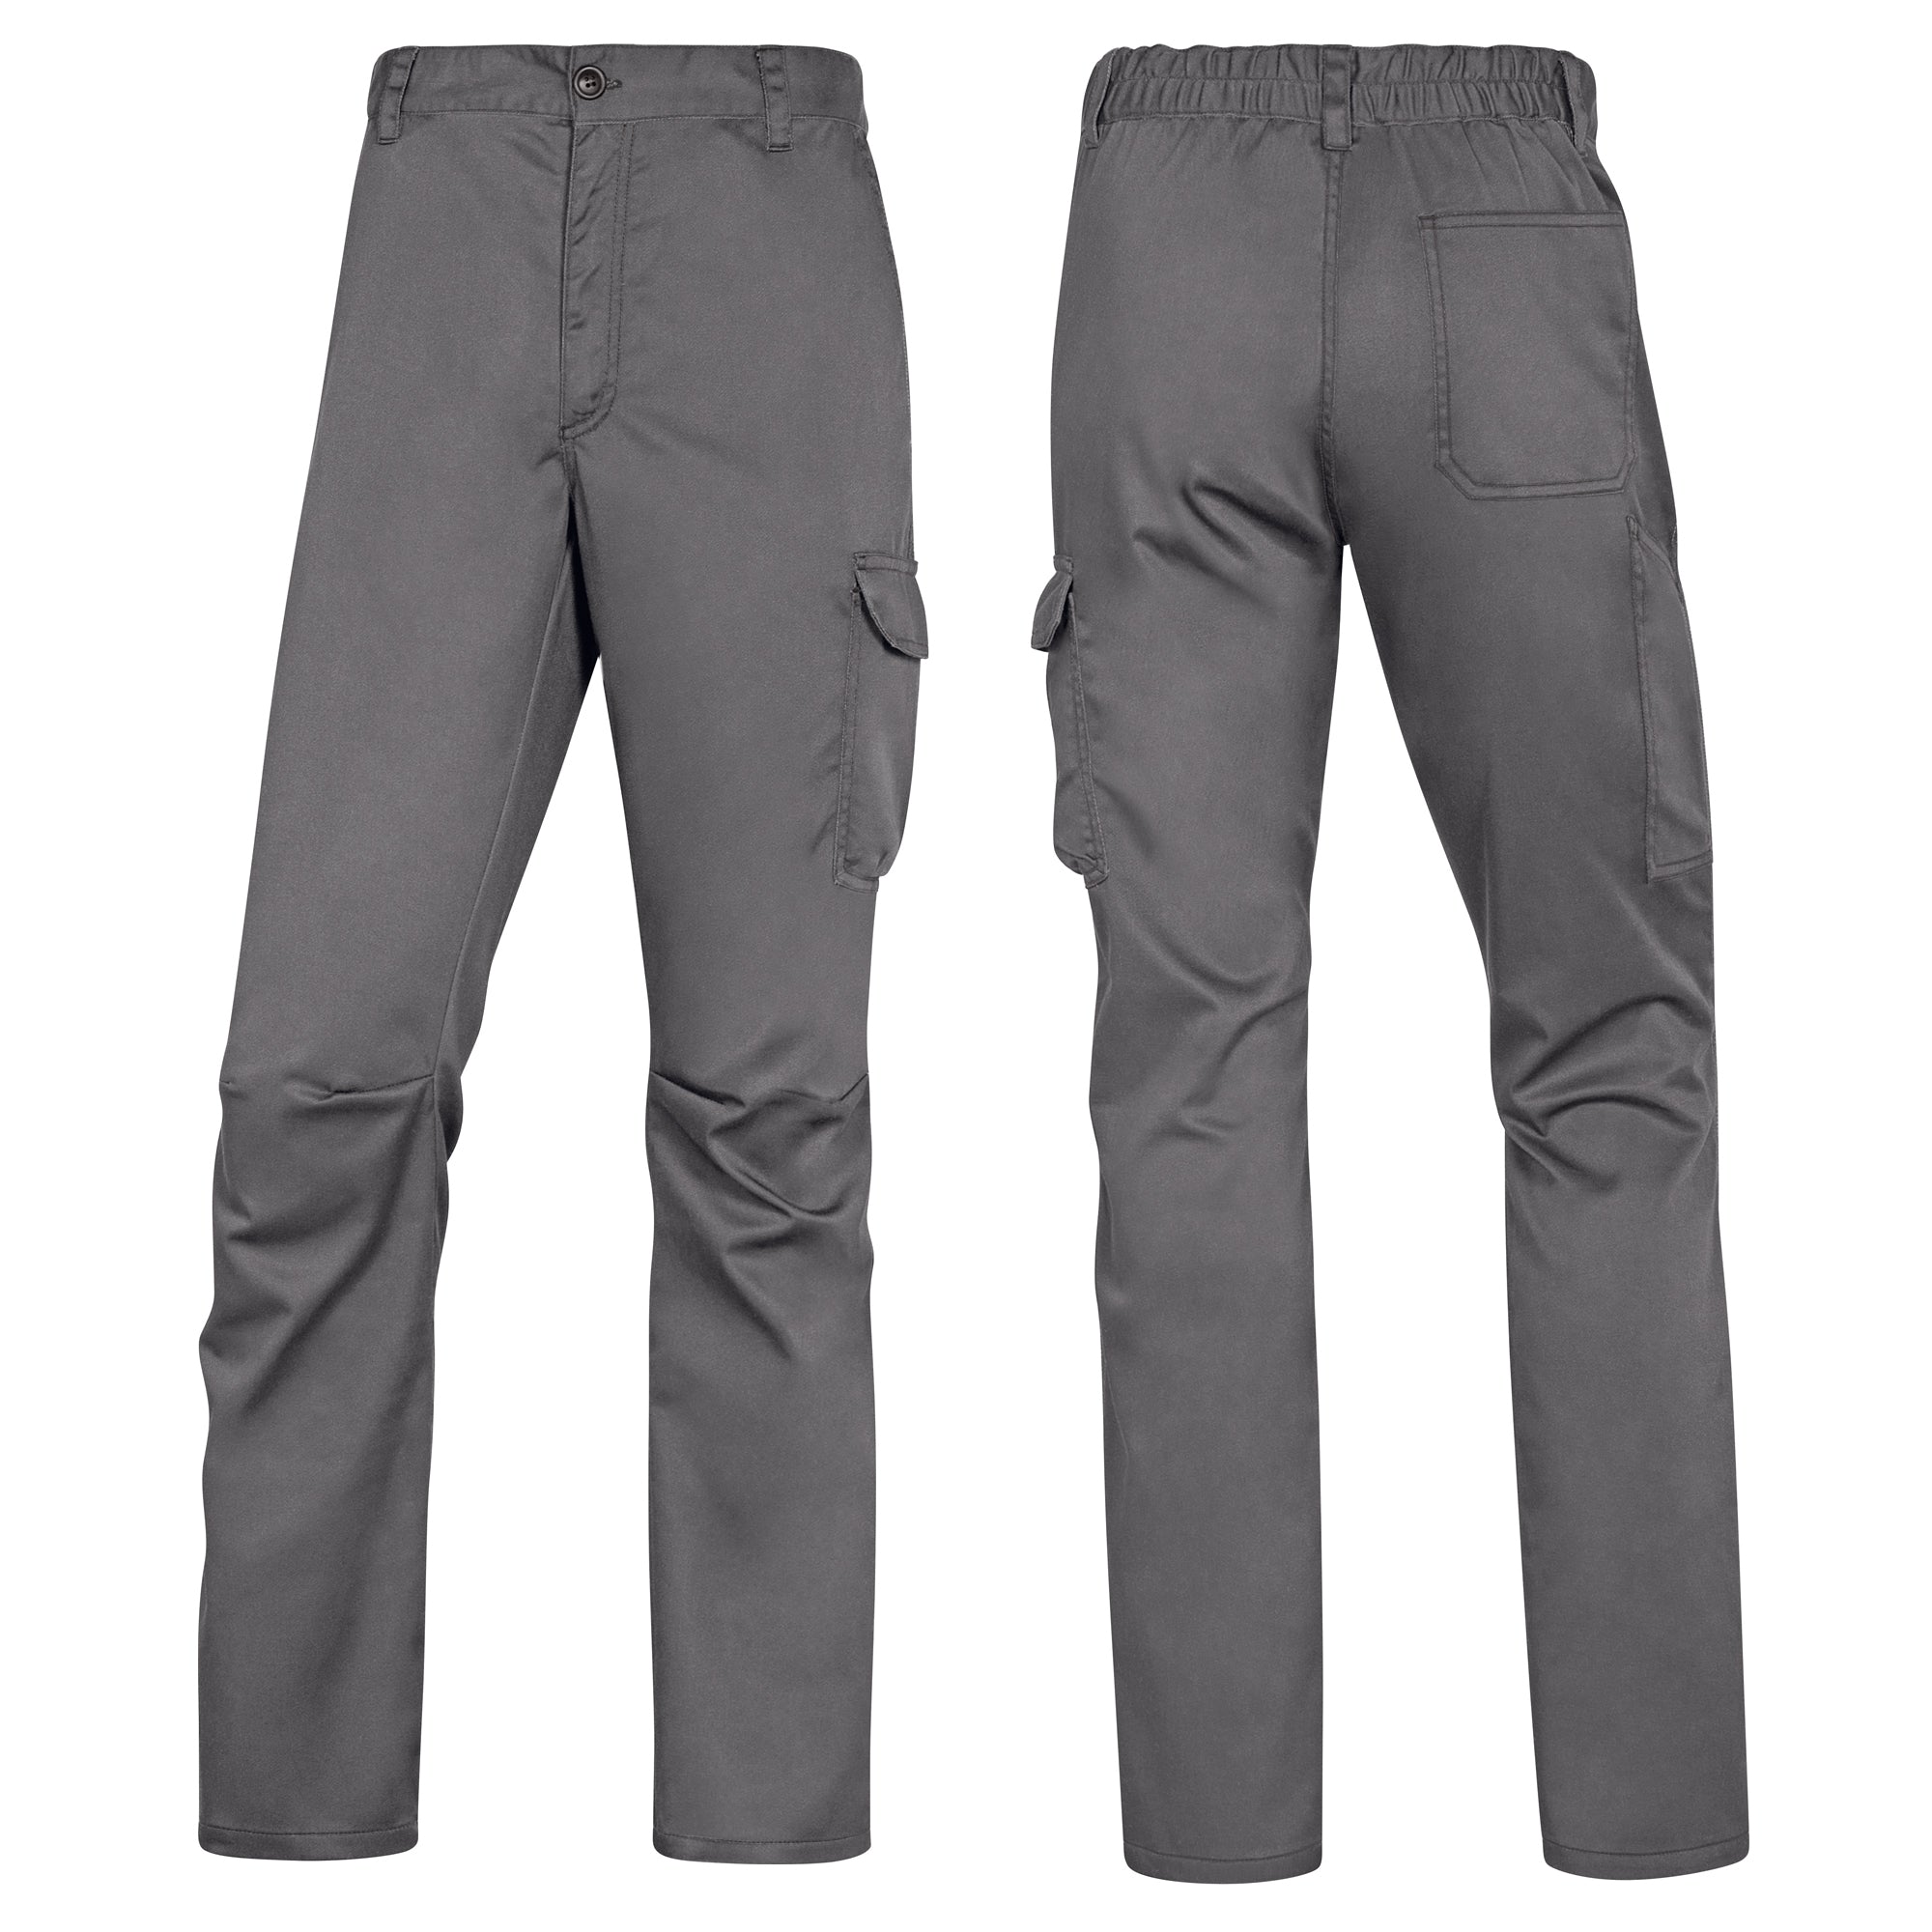 deltaplus-pantalone-lavoro-panostrpa-tg-l-grigio-nero